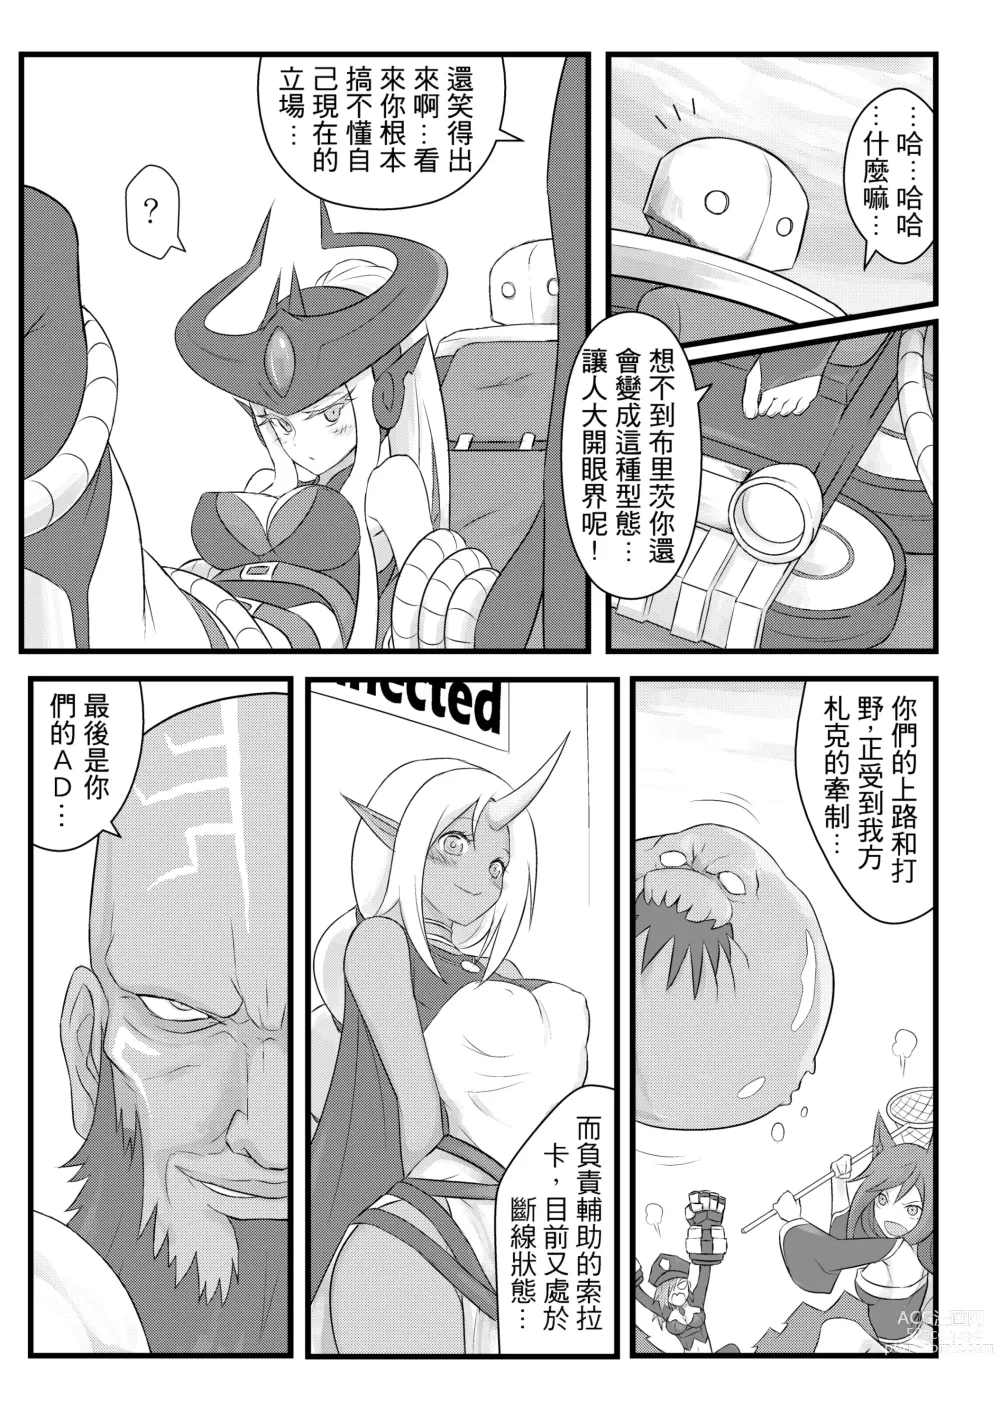 Page 8 of doujinshi ININ Renmei (uncensored)